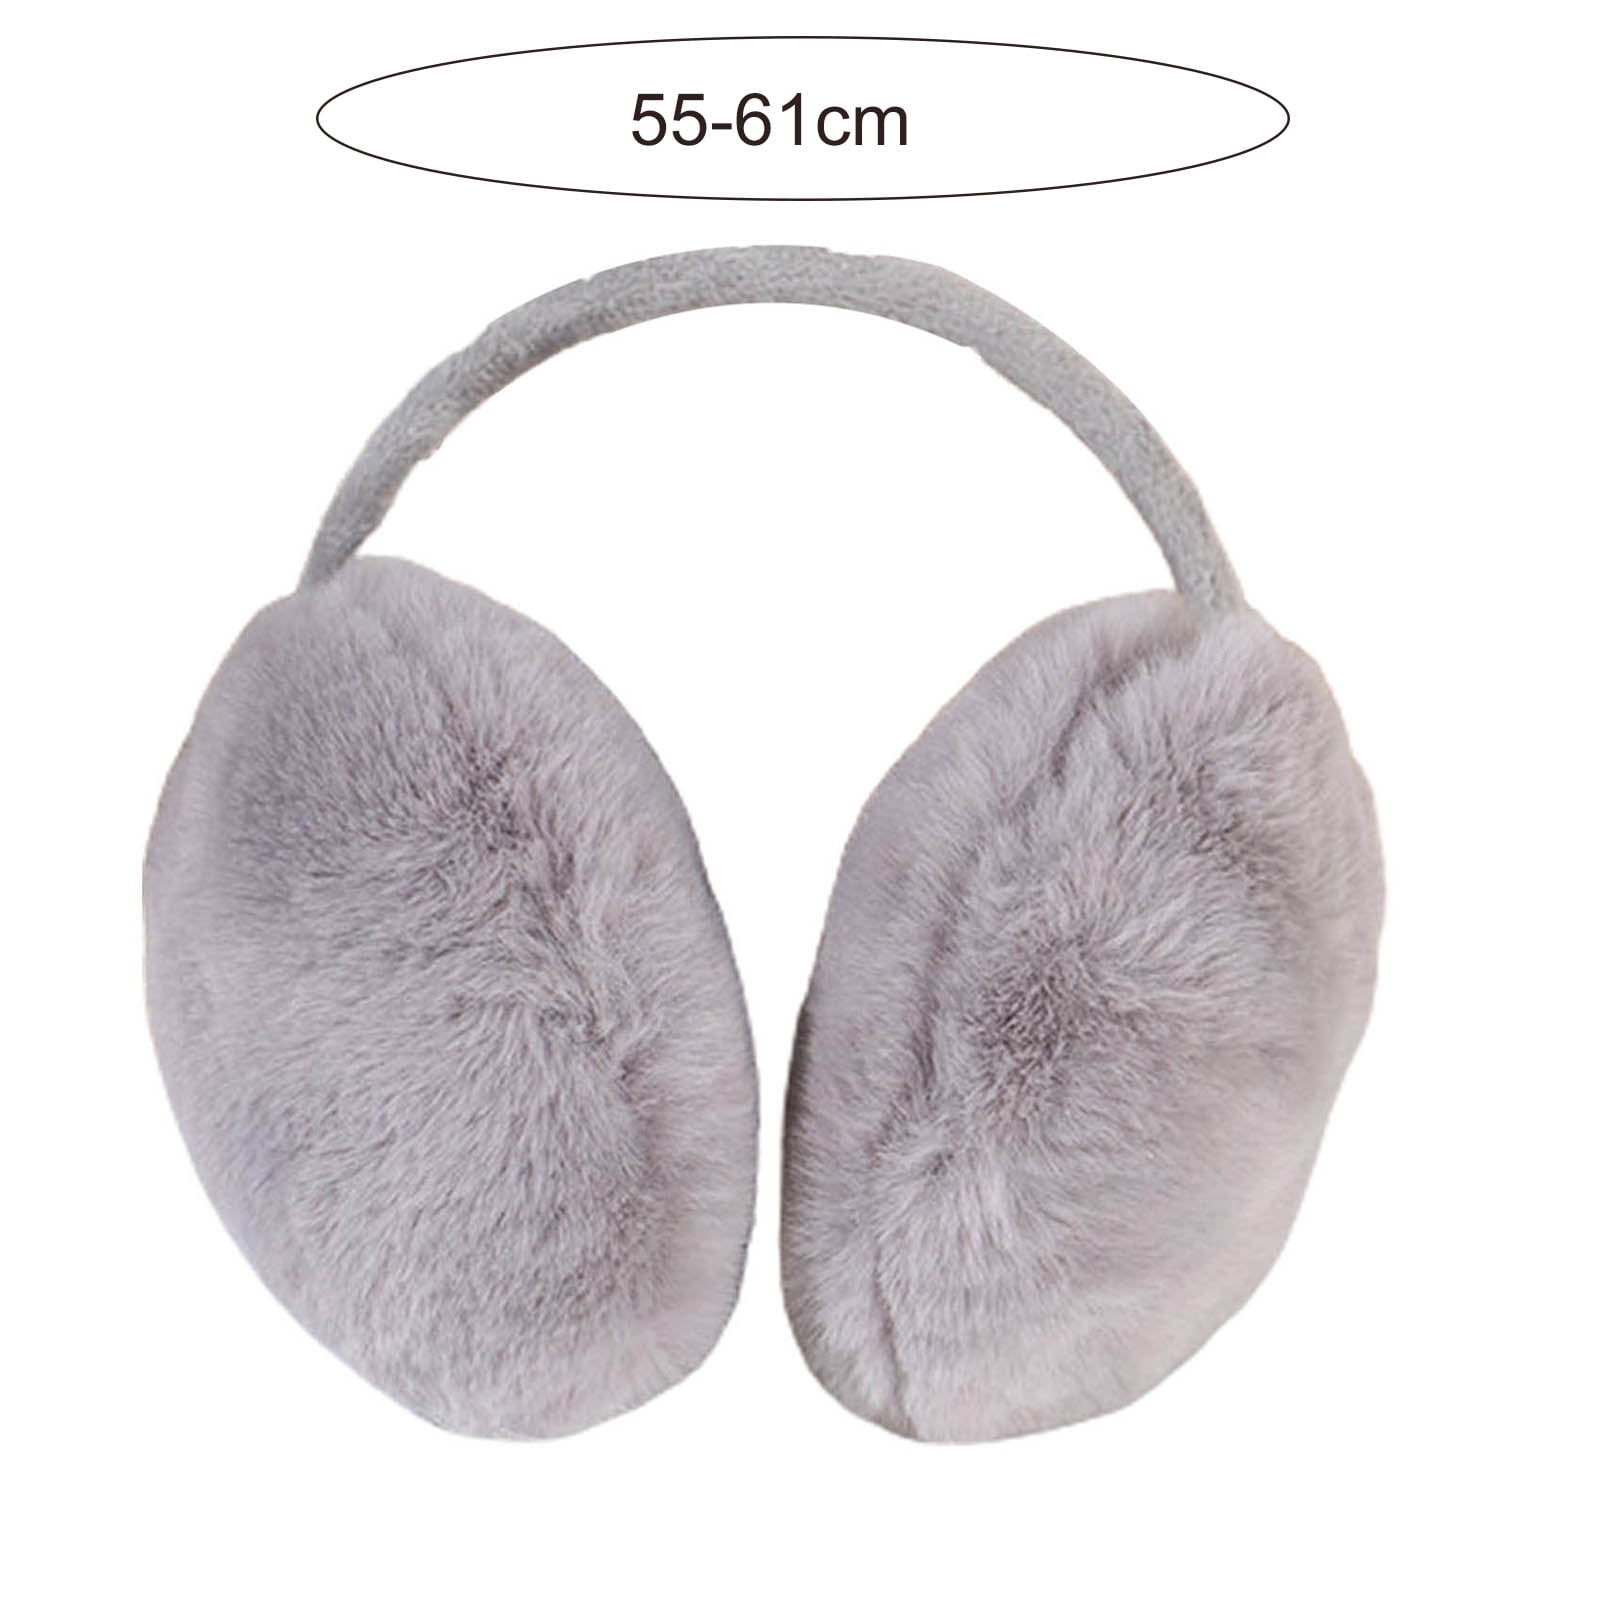 Adjustable Faux Fur Earmuffs- Soft Warm Ear Muffs for Winter Women Men- Ear  Covers Ear Warmers for Most Adults 